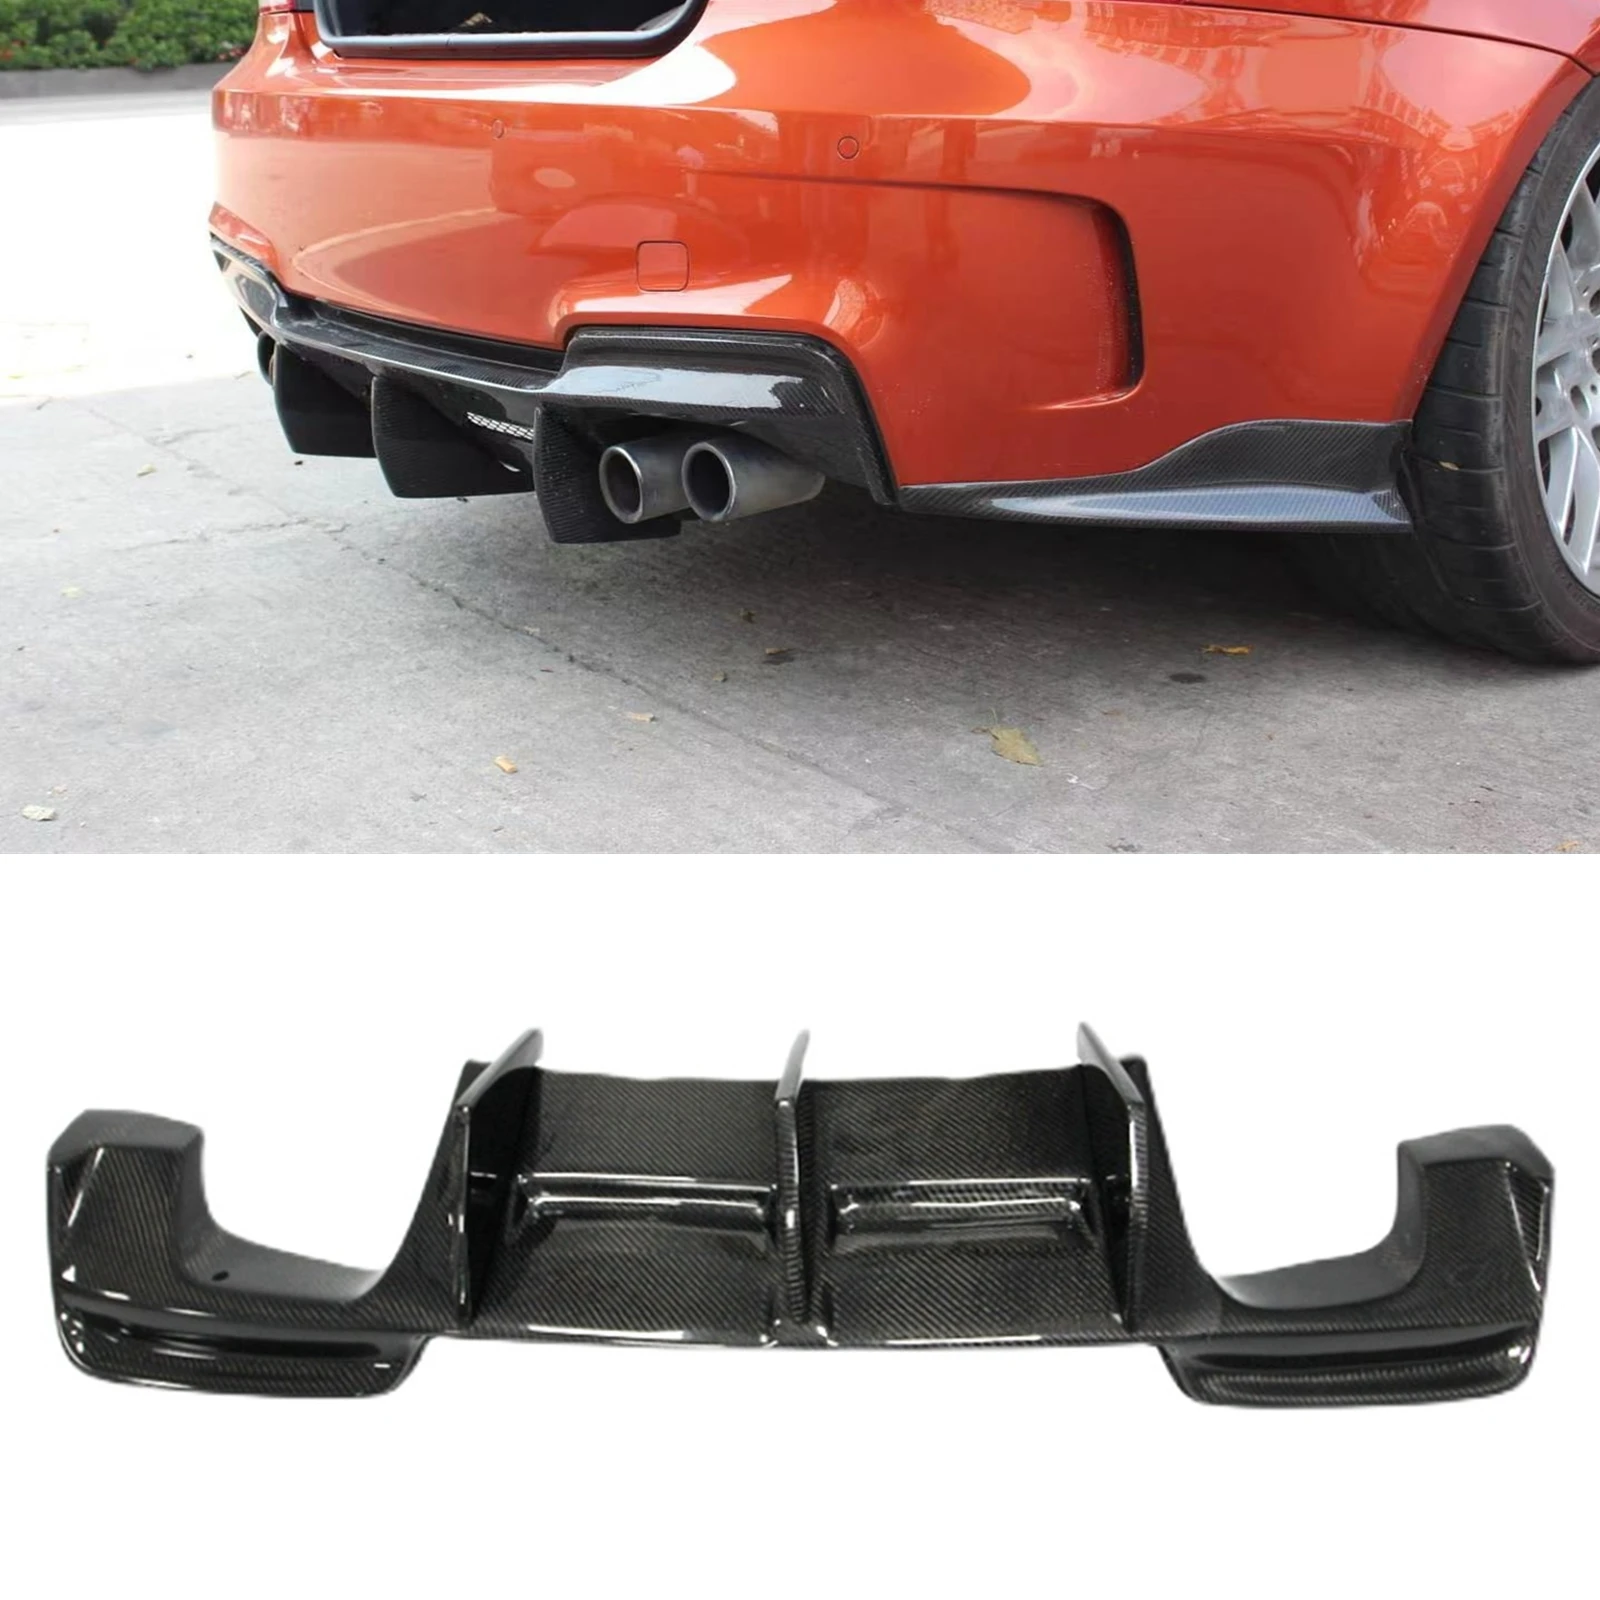 

Carbon Fiber Rear Diffuser Bumper Lower Guard Spoiler Boot Splitter Lip For BMW 1 Series E82 1M / E88 1M Coupe 2 Door 2011-2013